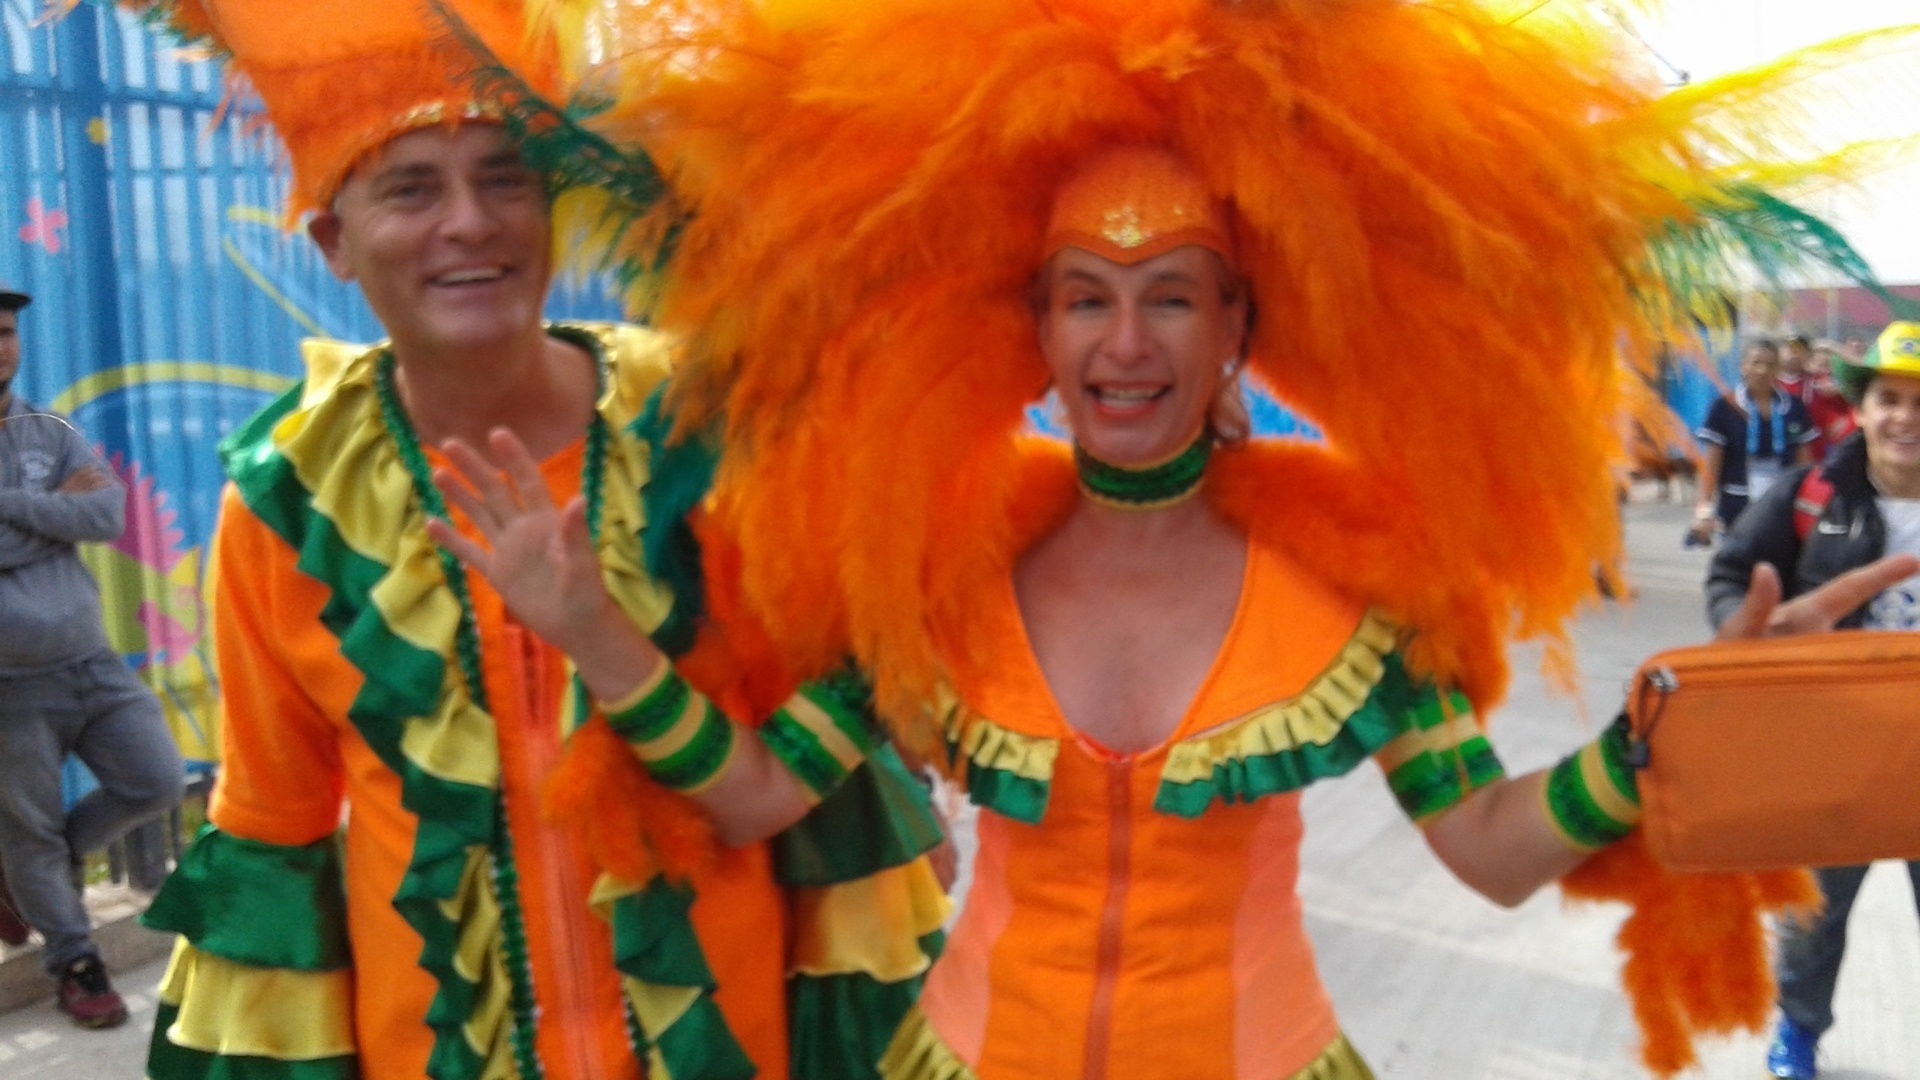 Torcedores da Holanda entram no clima do Brasil com fantasia carnavalesca